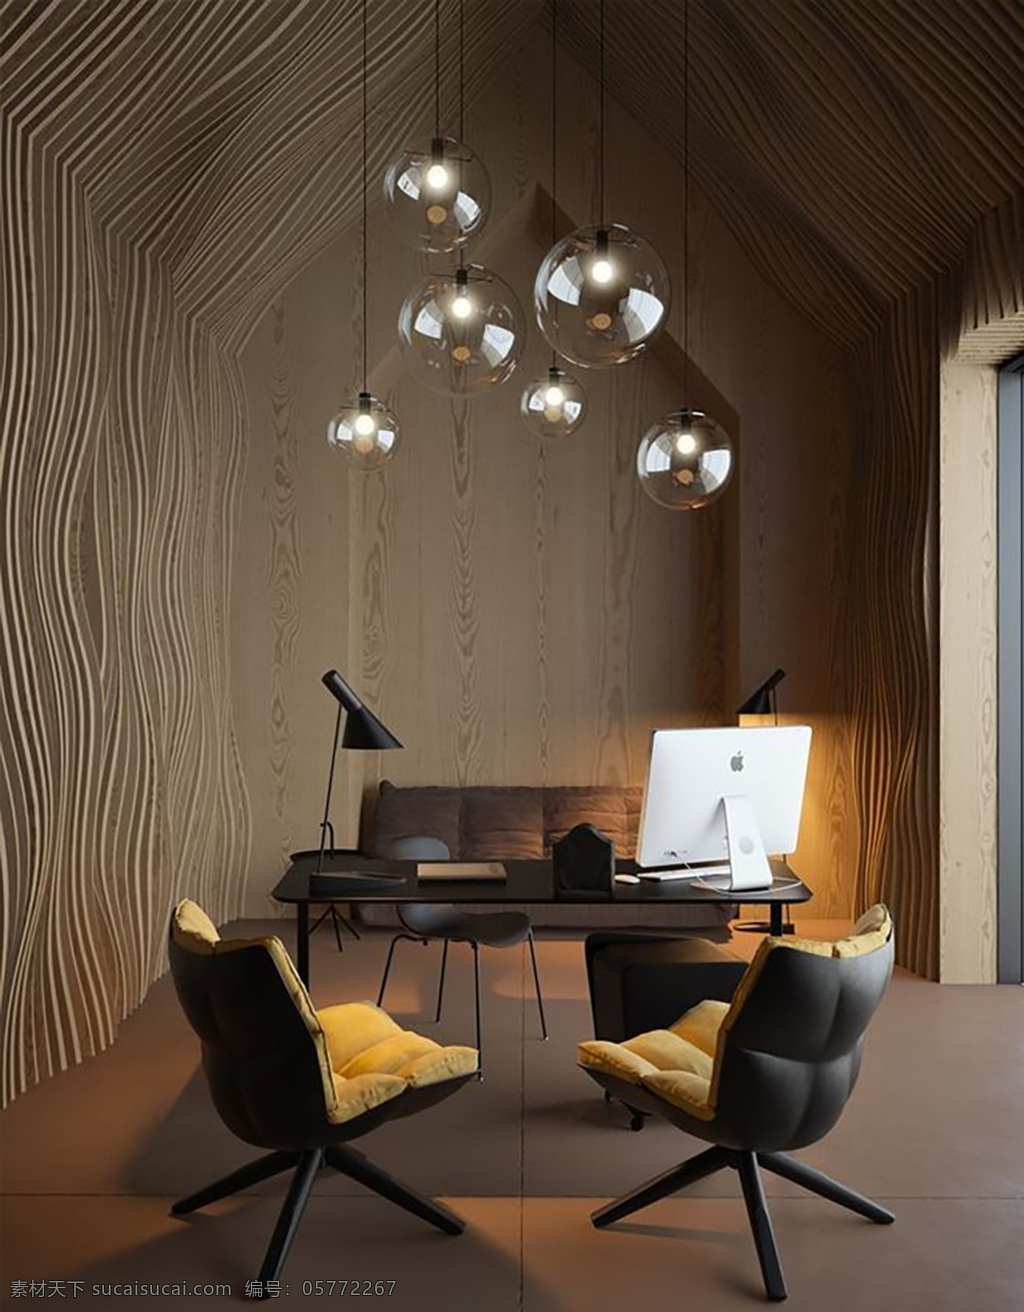 极 具 办公室 墙纸 墙布 效果图 室内设计 搭配 现代 北欧 bbbb